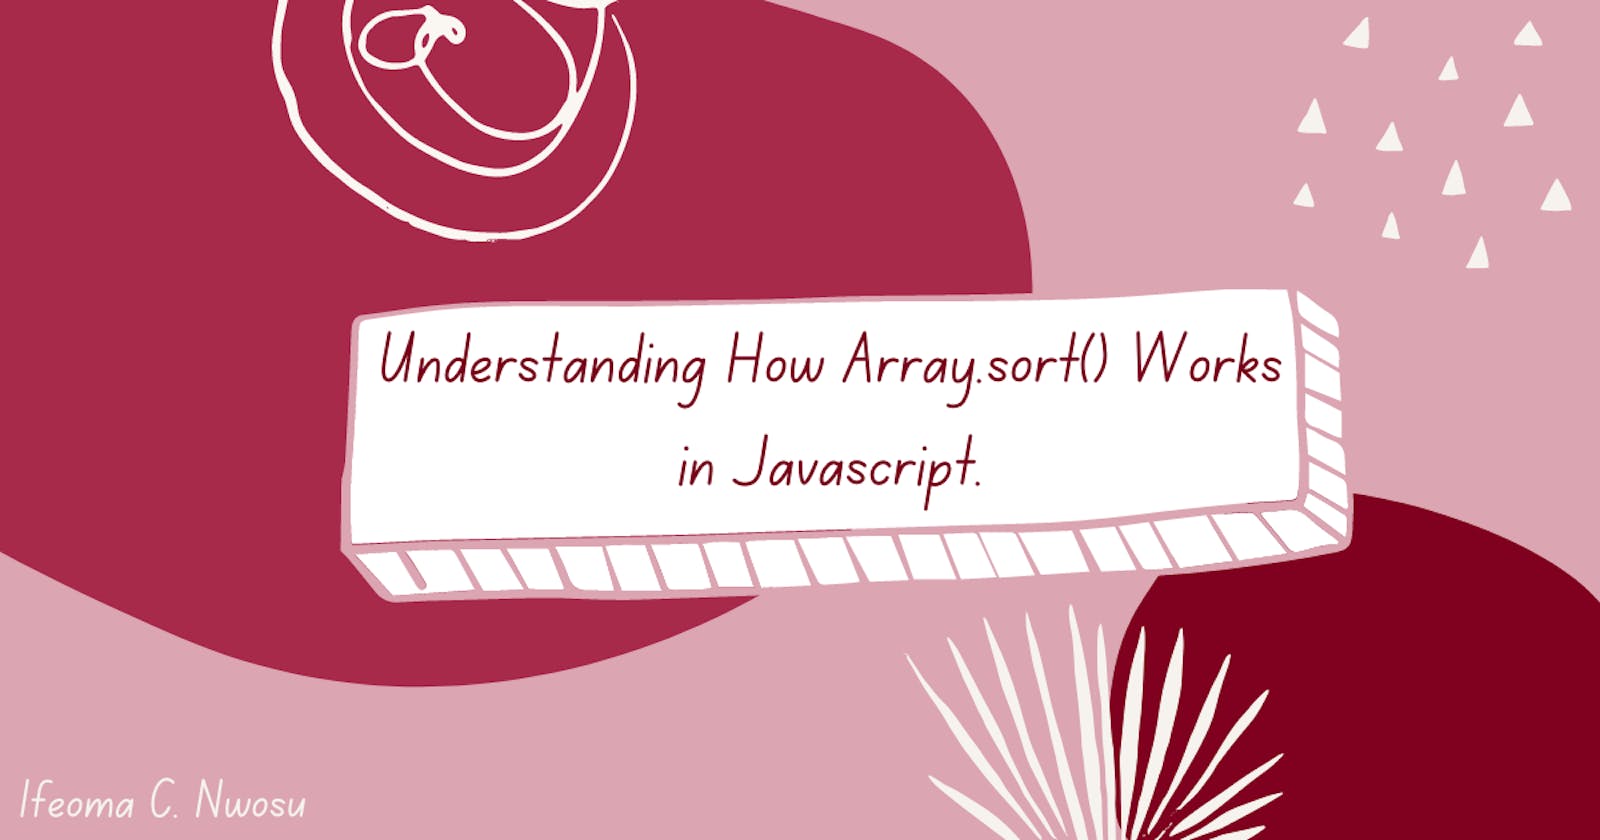 Understanding How Array.sort() Works in Javascript.